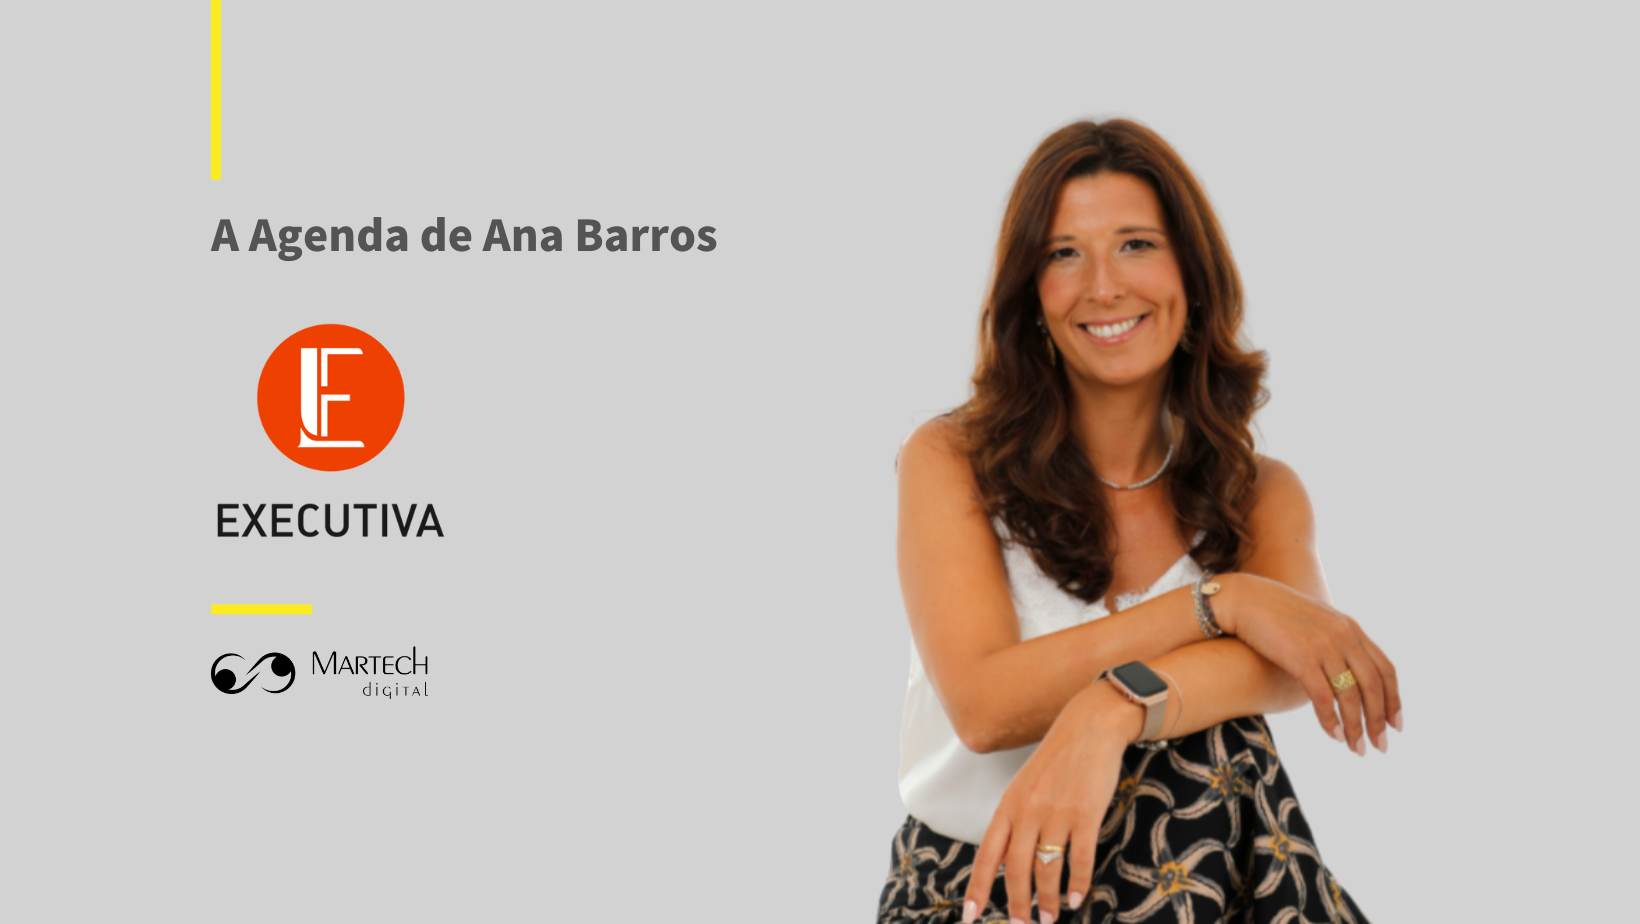 A agenda de Ana Barros